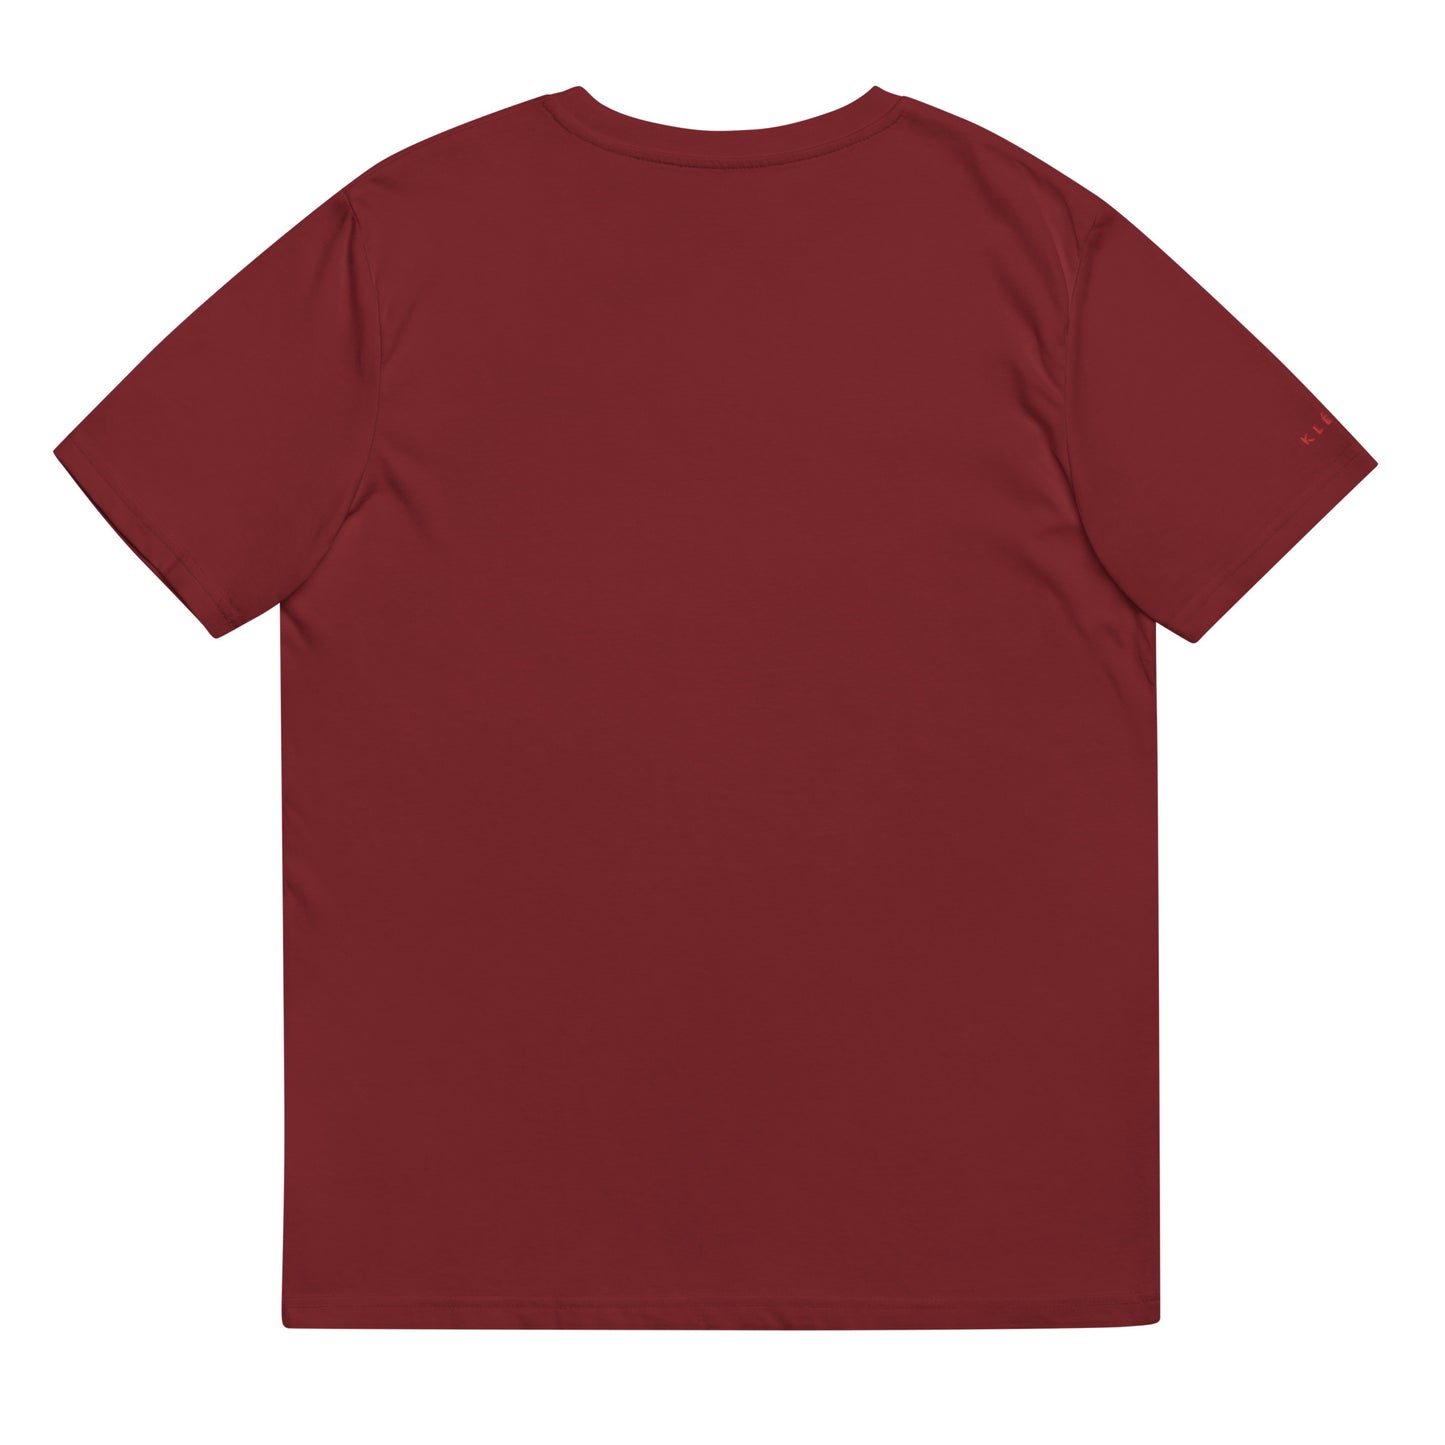 Klediq T-shirt / Maroon